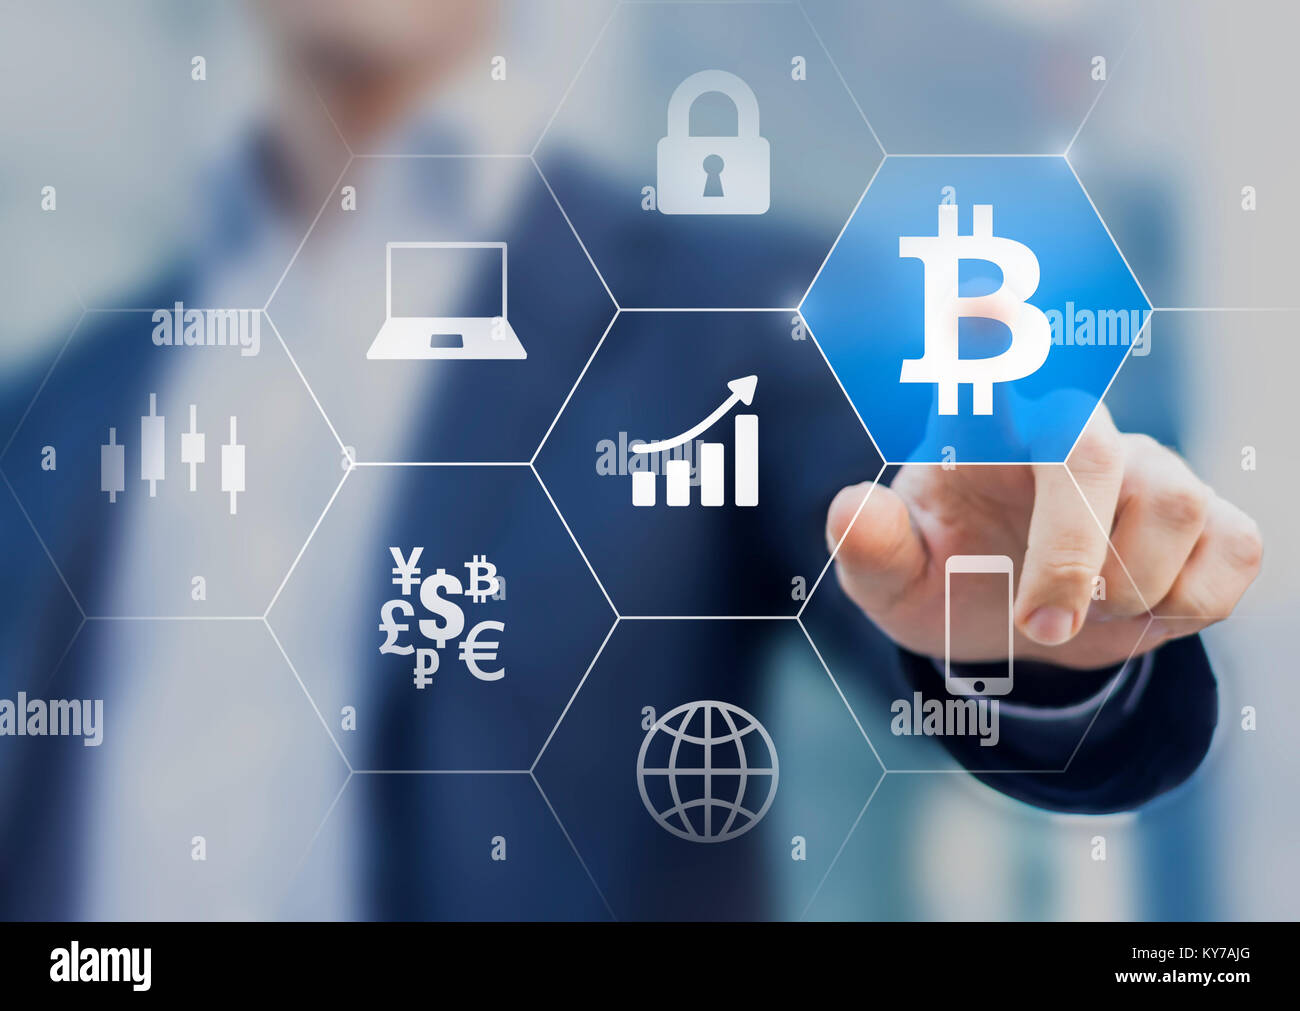 Empresario exitoso haciendo inversiones financieras en cryptocurrency Bitcoin trading con alto ROI, concepto con una persona tocando BTC o símbolo de moneda Foto de stock